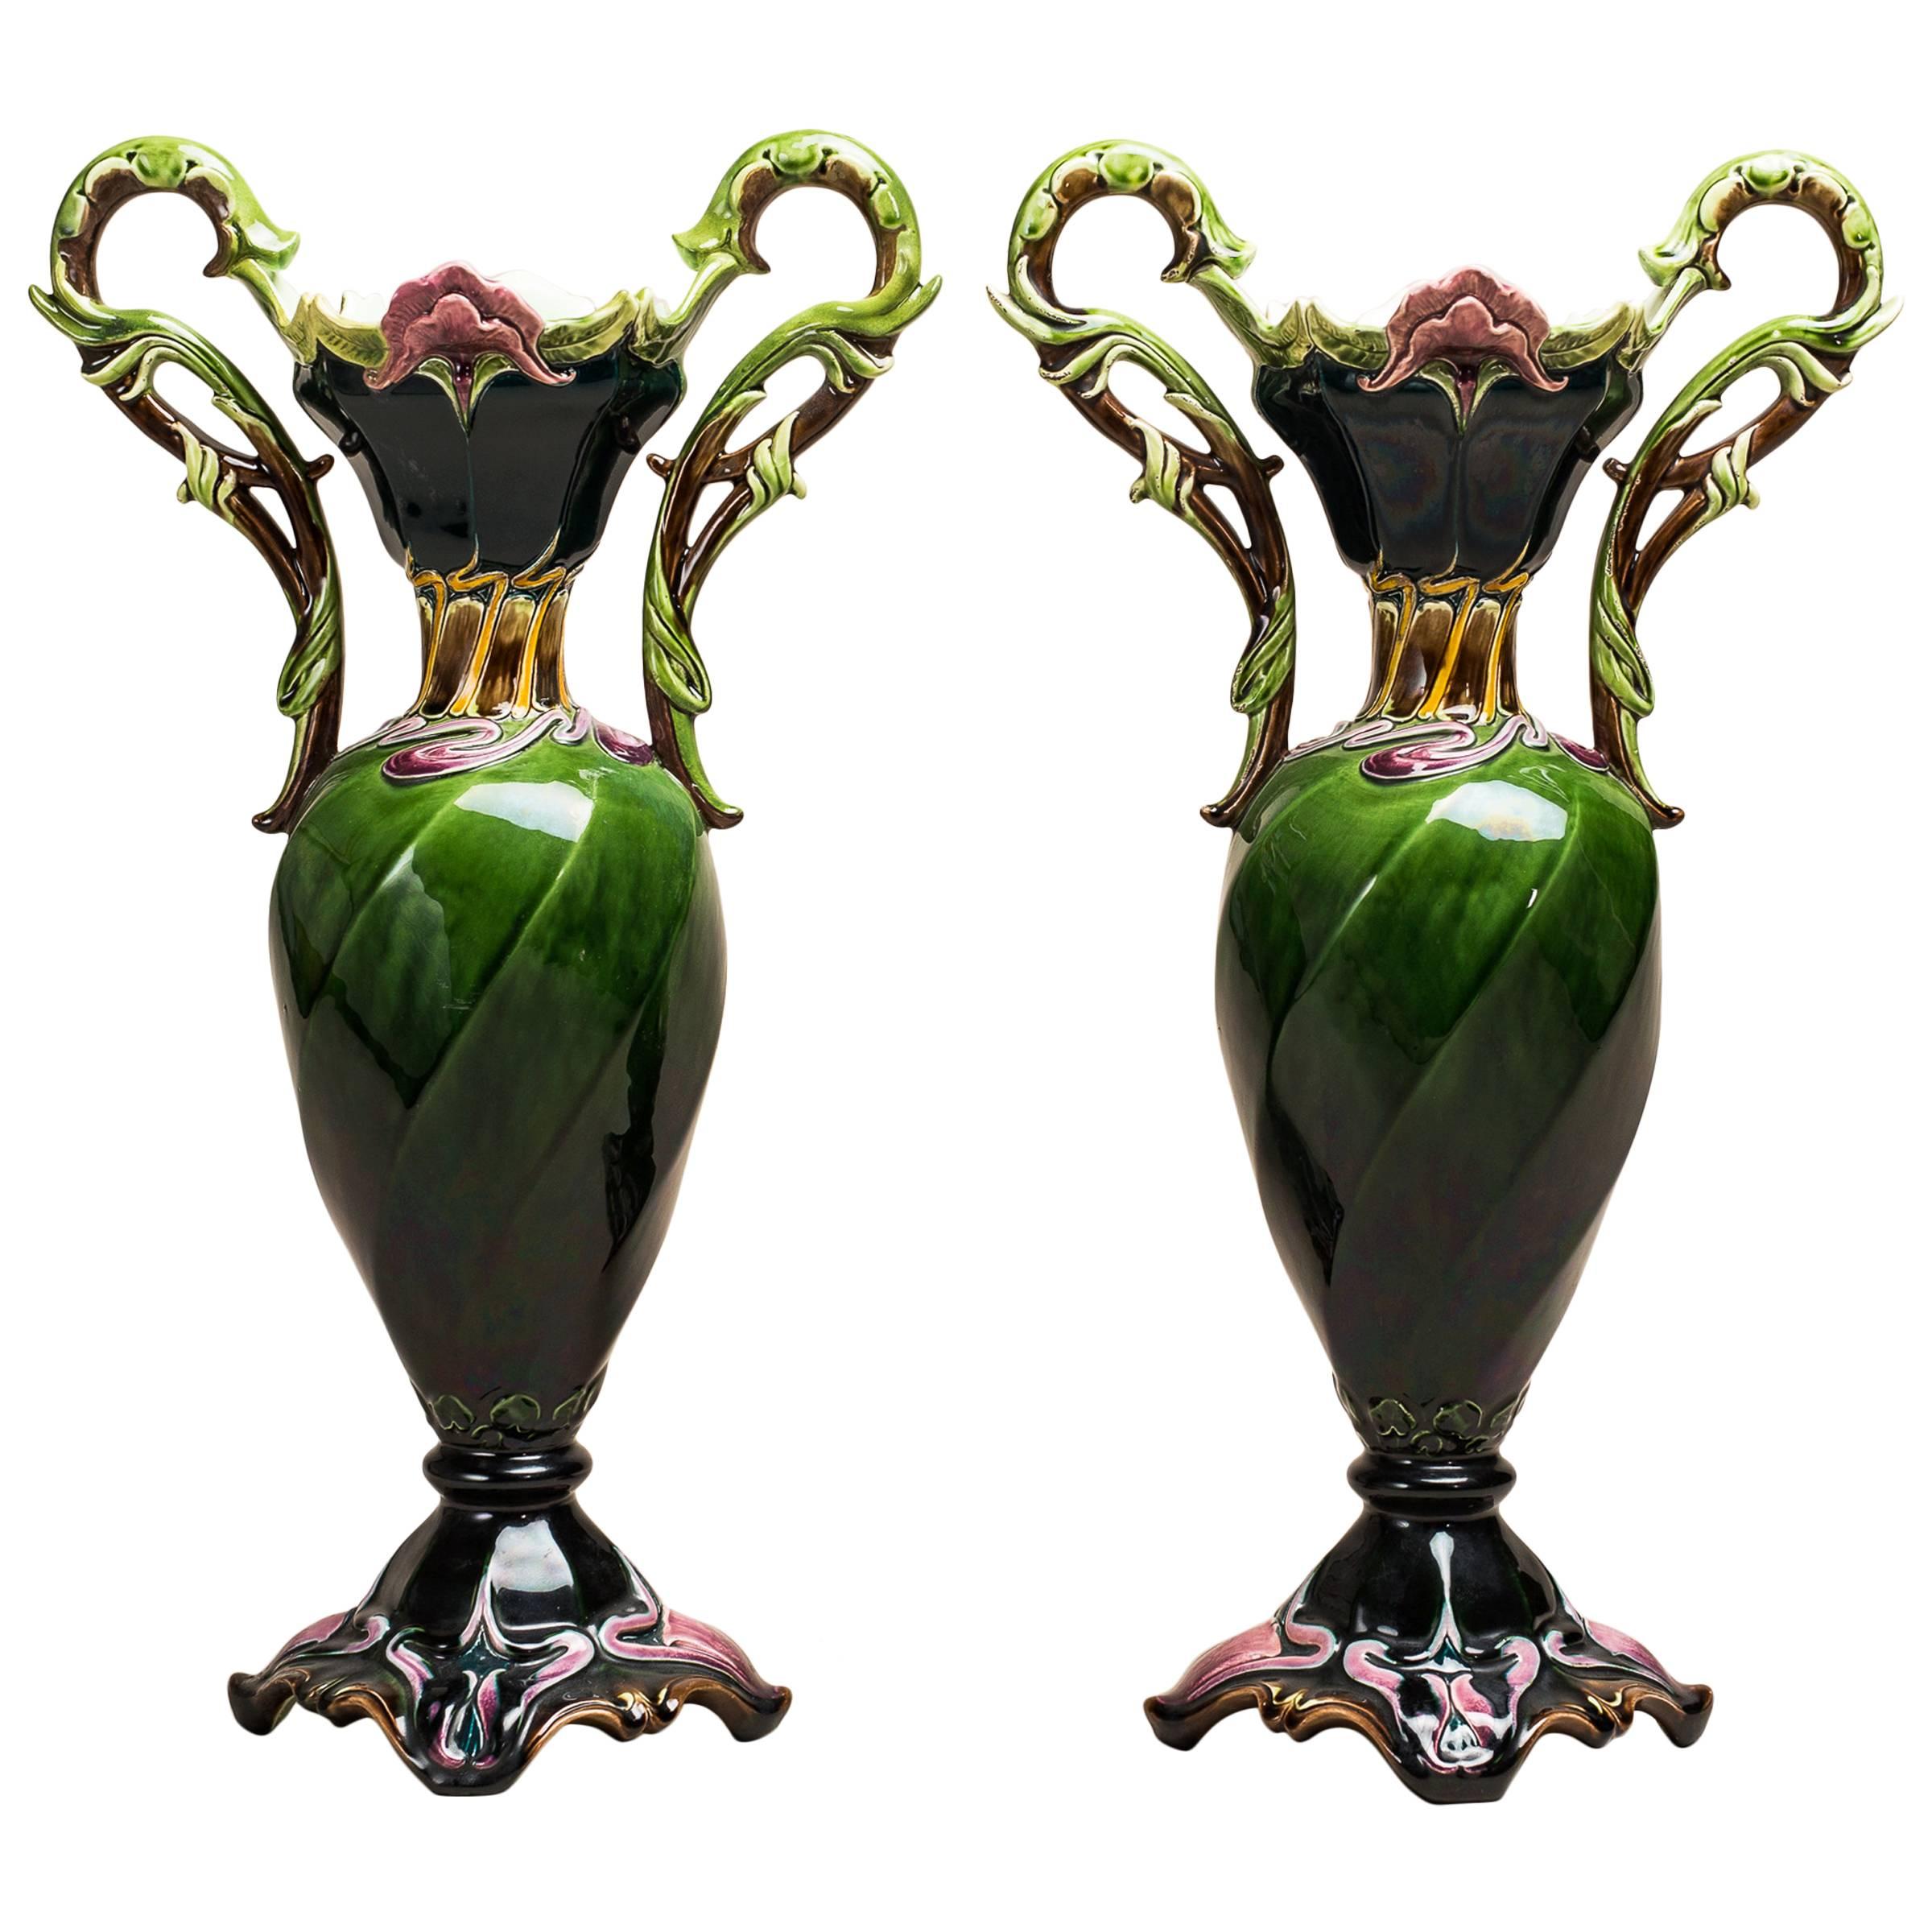 Pair of Art Nouveau Vases - by Julius Dressler